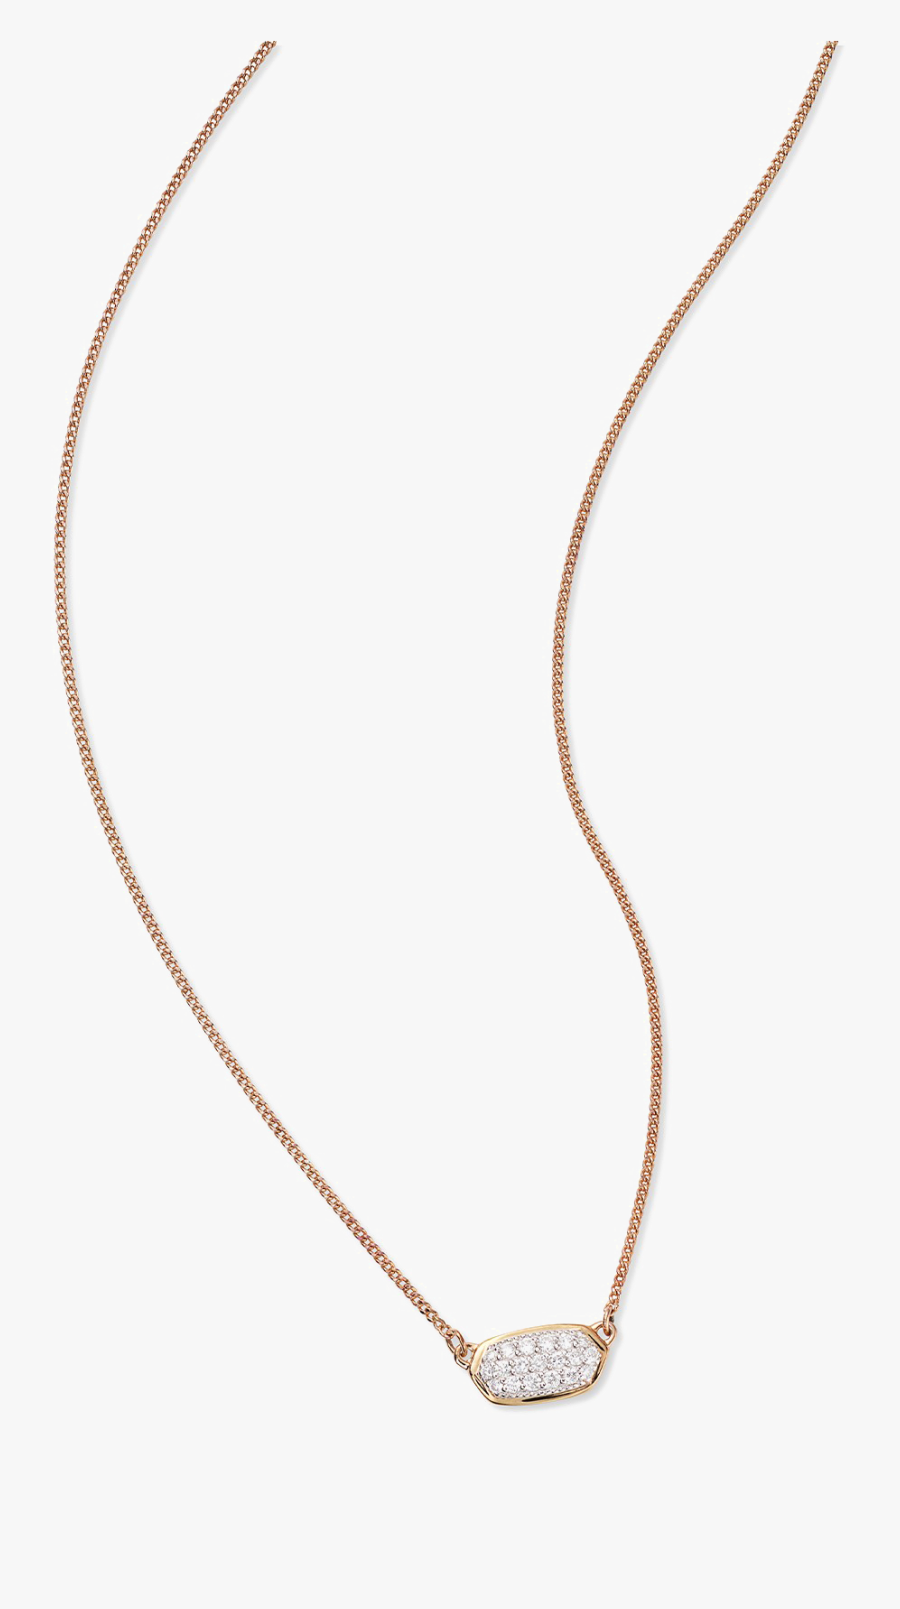 Pendant Necklace Png Image - Necklace, Transparent Clipart